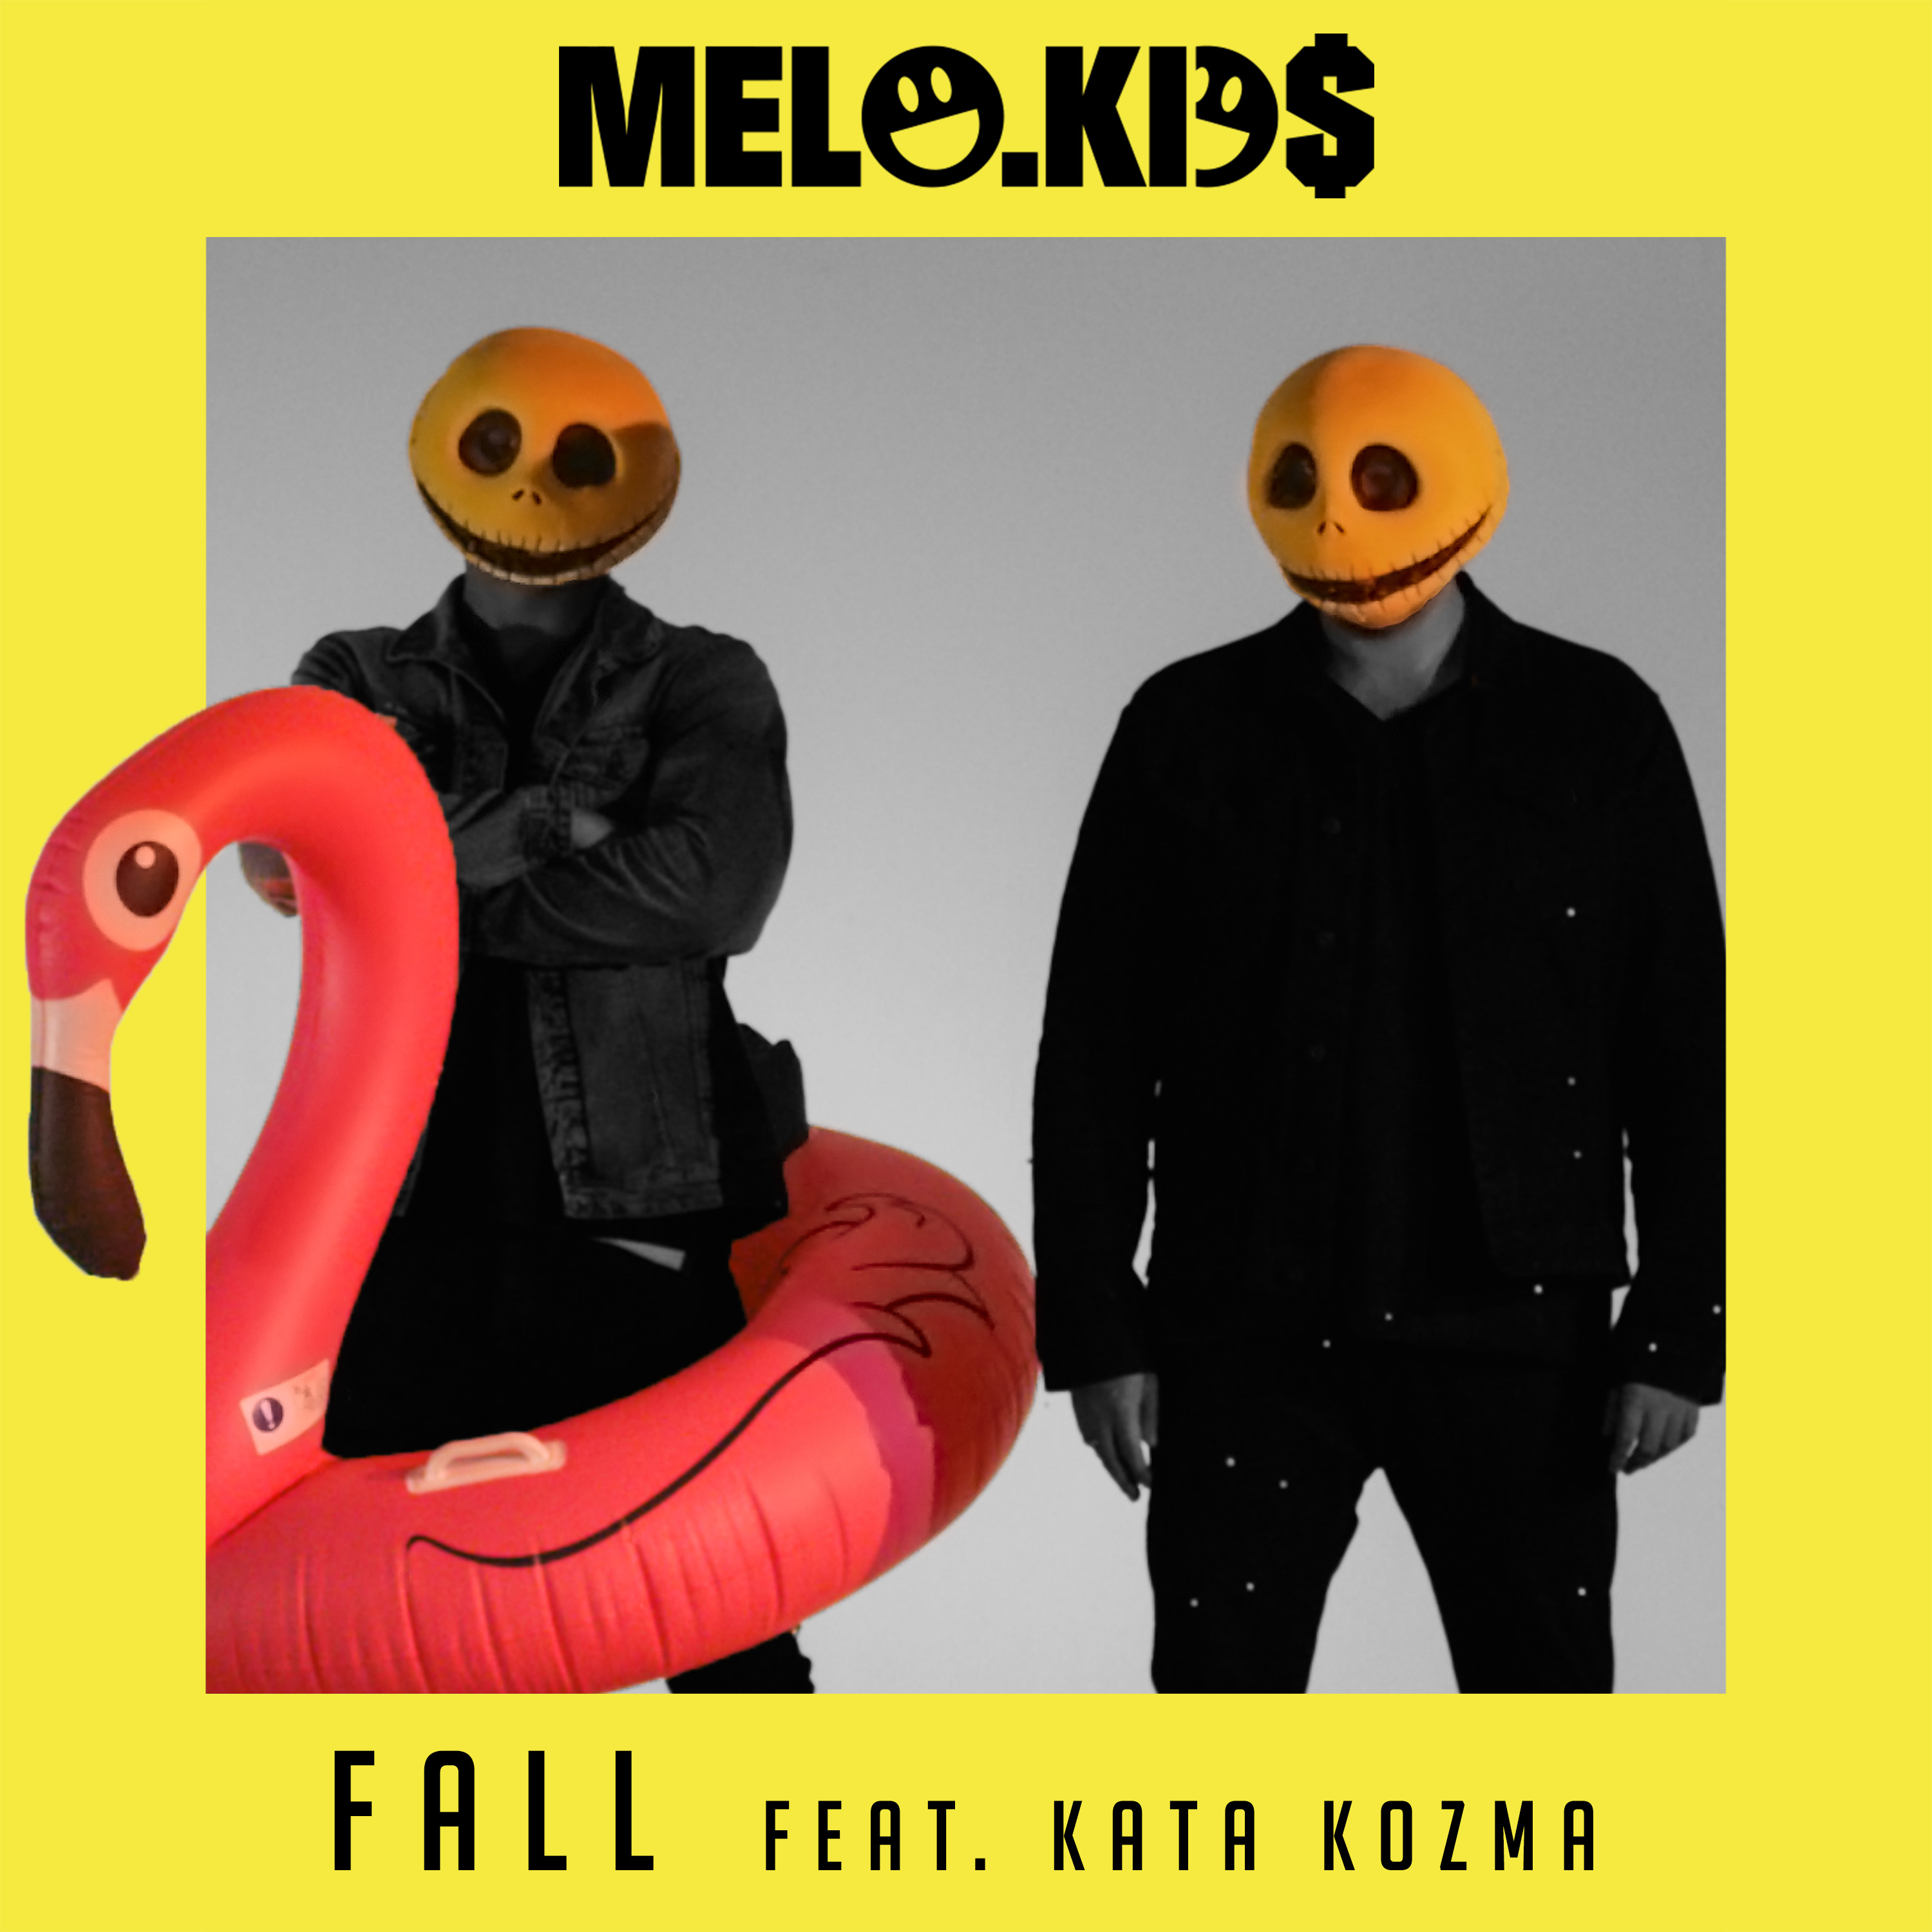 Melo.Kids - zobacz Fall - debiutancki teledysk tajemniczego duetu producentów